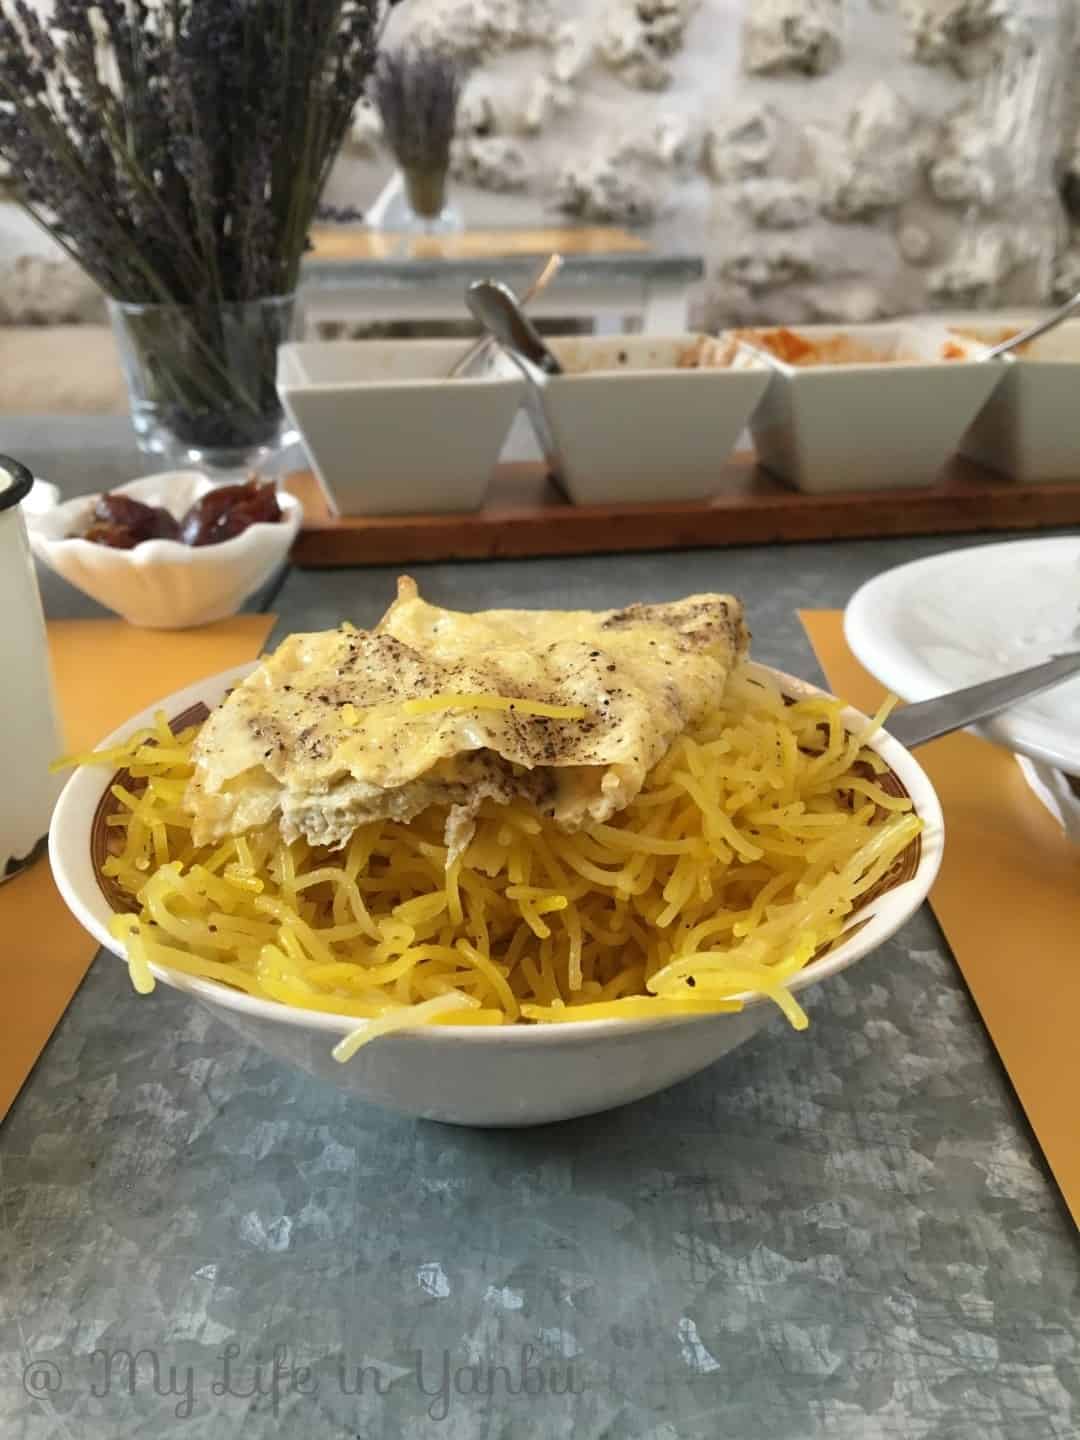 The Best Breakfast in Bahrain | Saffron By Jena